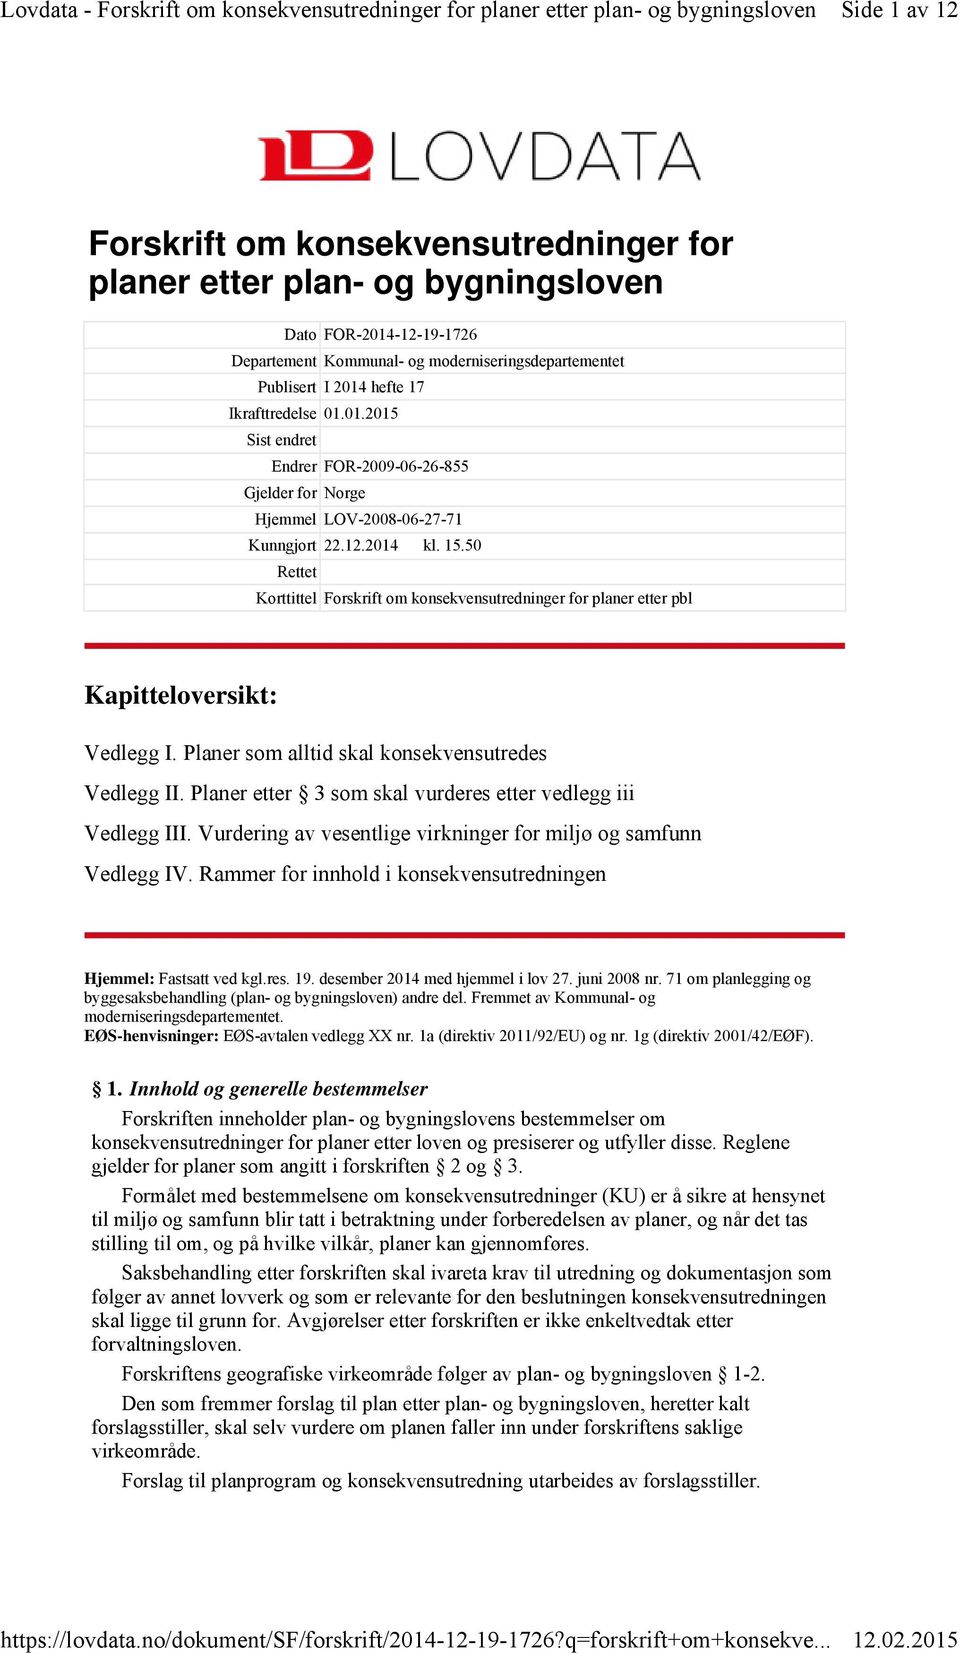 50 Rettet Korttittel Forskrift om konsekvensutredninger for planer etter pbl Kapitteloversikt: Vedlegg I. Planer som alltid skal konsekvensutredes Vedlegg II.